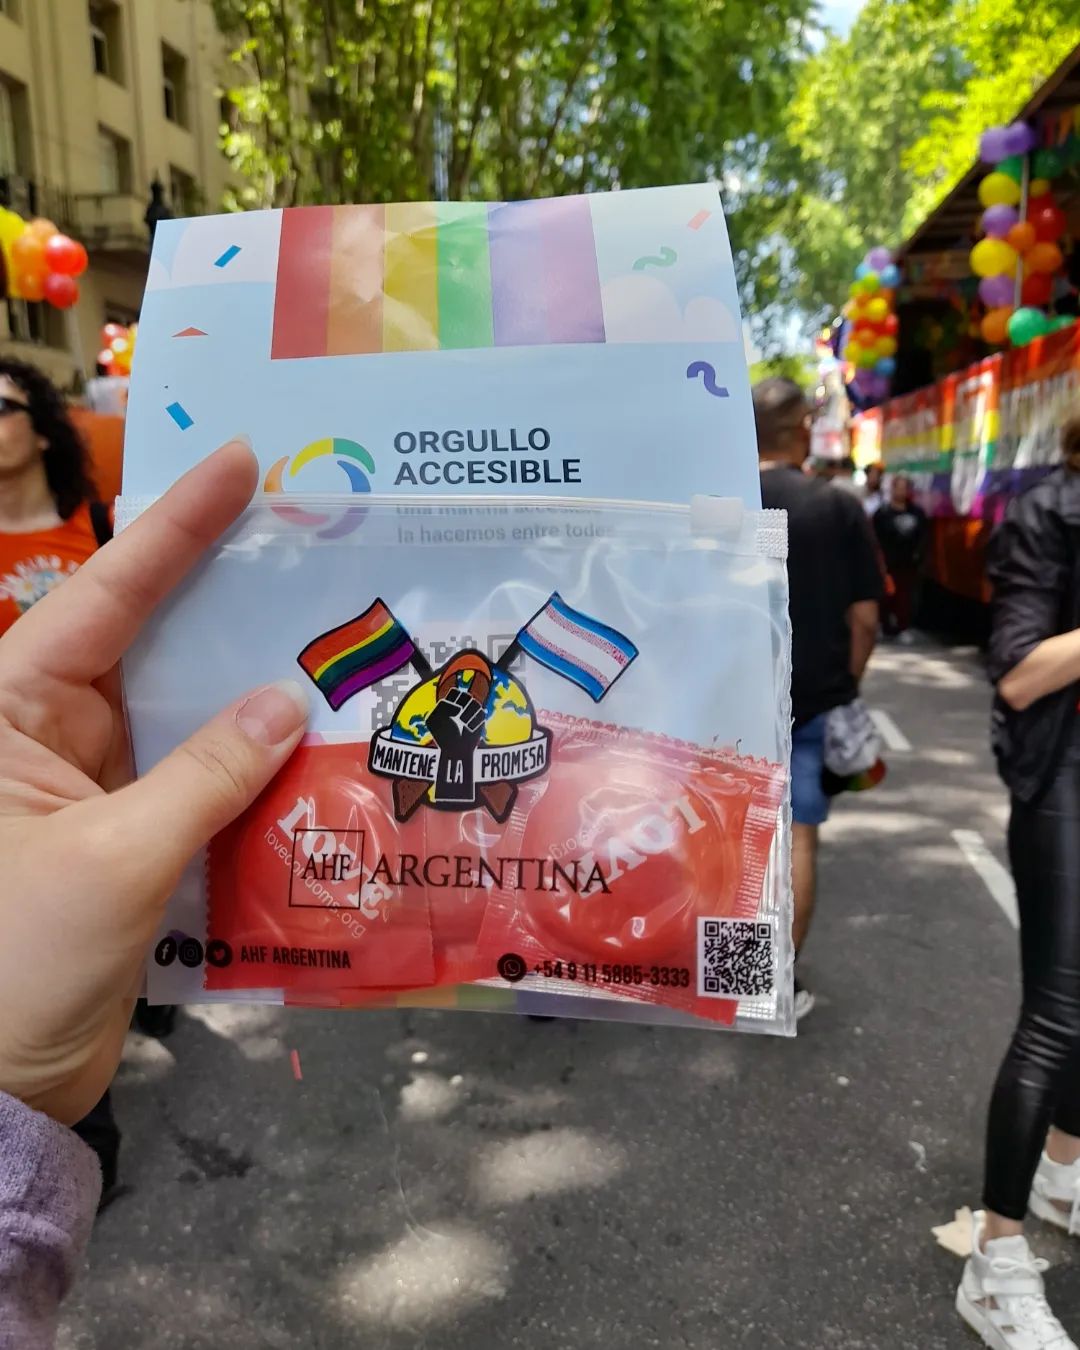 🏳️‍🌈🏳️‍⚧️🌈 Marcha del Orgullo - Buenos Aires 2023 🌈🏳️‍⚧️🏳️‍🌈

Acompañando como siempre la movilización, la alegría  y la memoria. 

#marchadelorgullo
#orgullo2023 #pride
#buenosaires #love #arcoiris